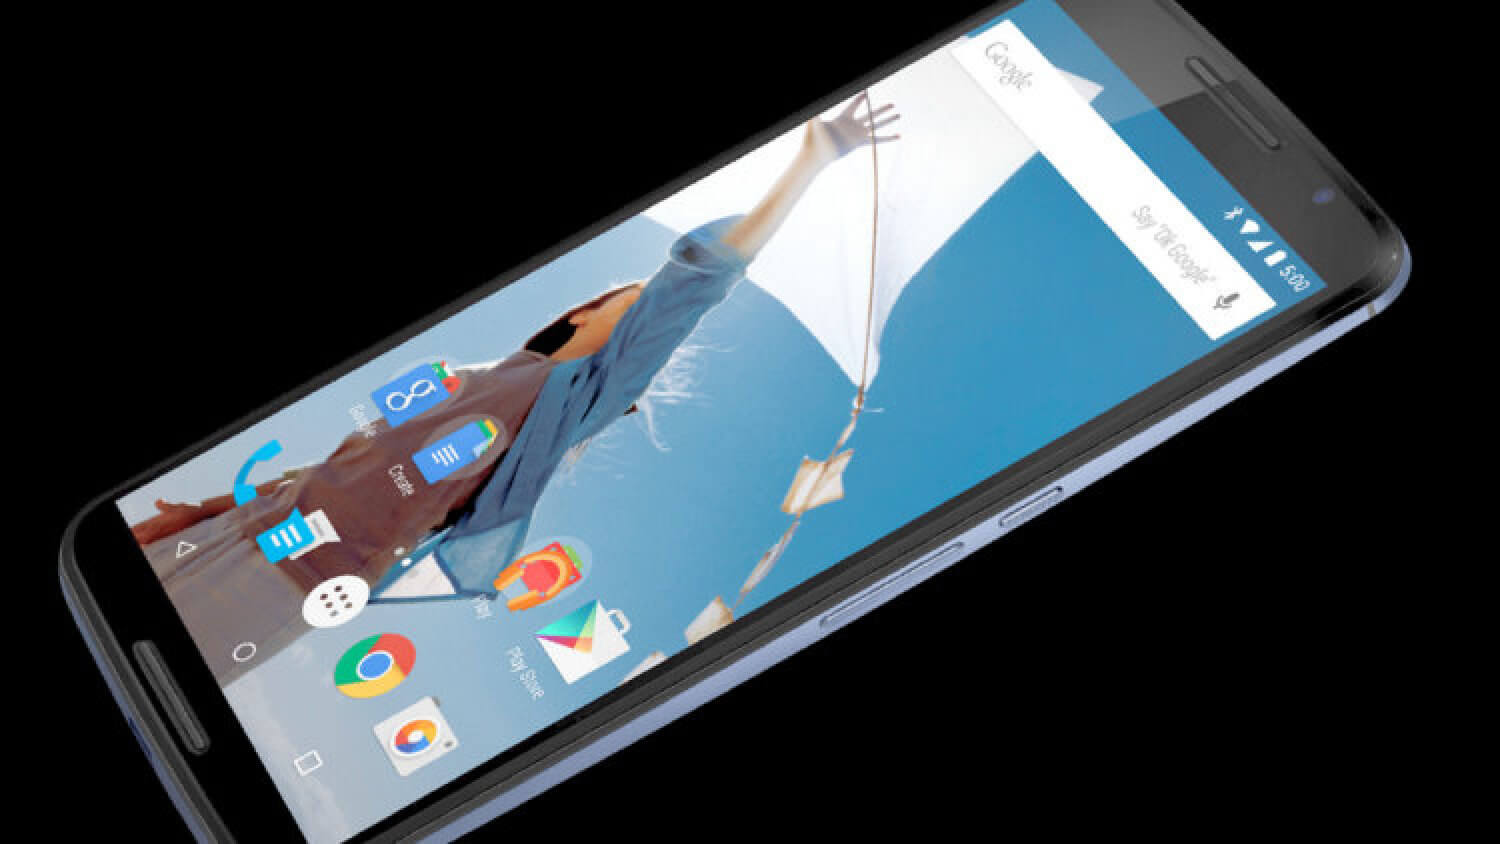 Droid Turbo оказался лучше Nexus 6 в соревновании Android-смартфонов Motorola? Фото.